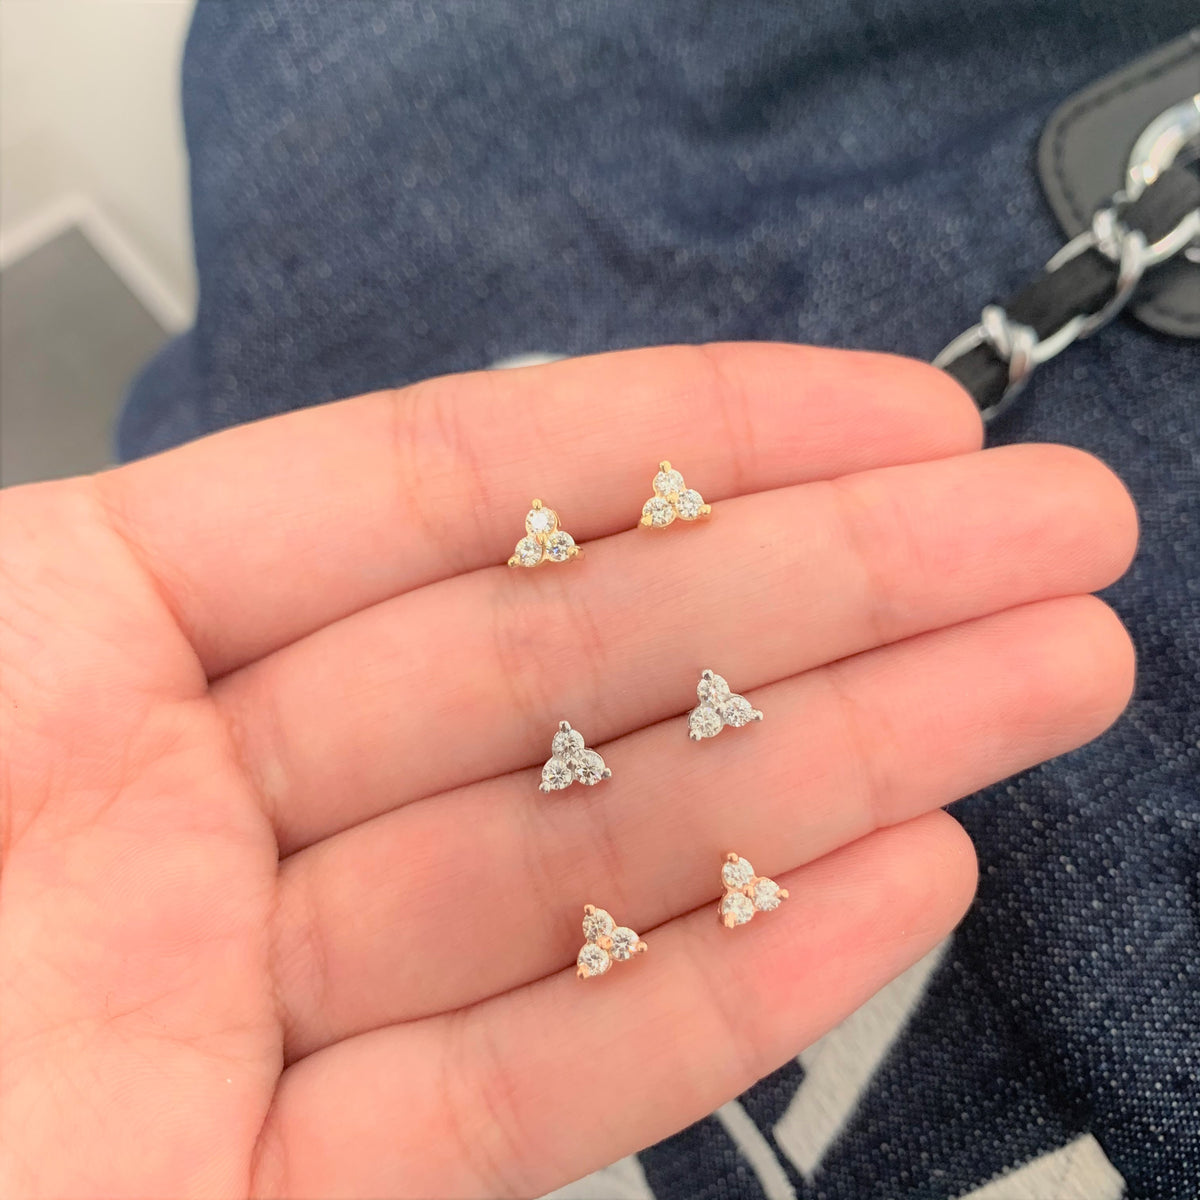 14k White Gold & Diamond Stud Earrings